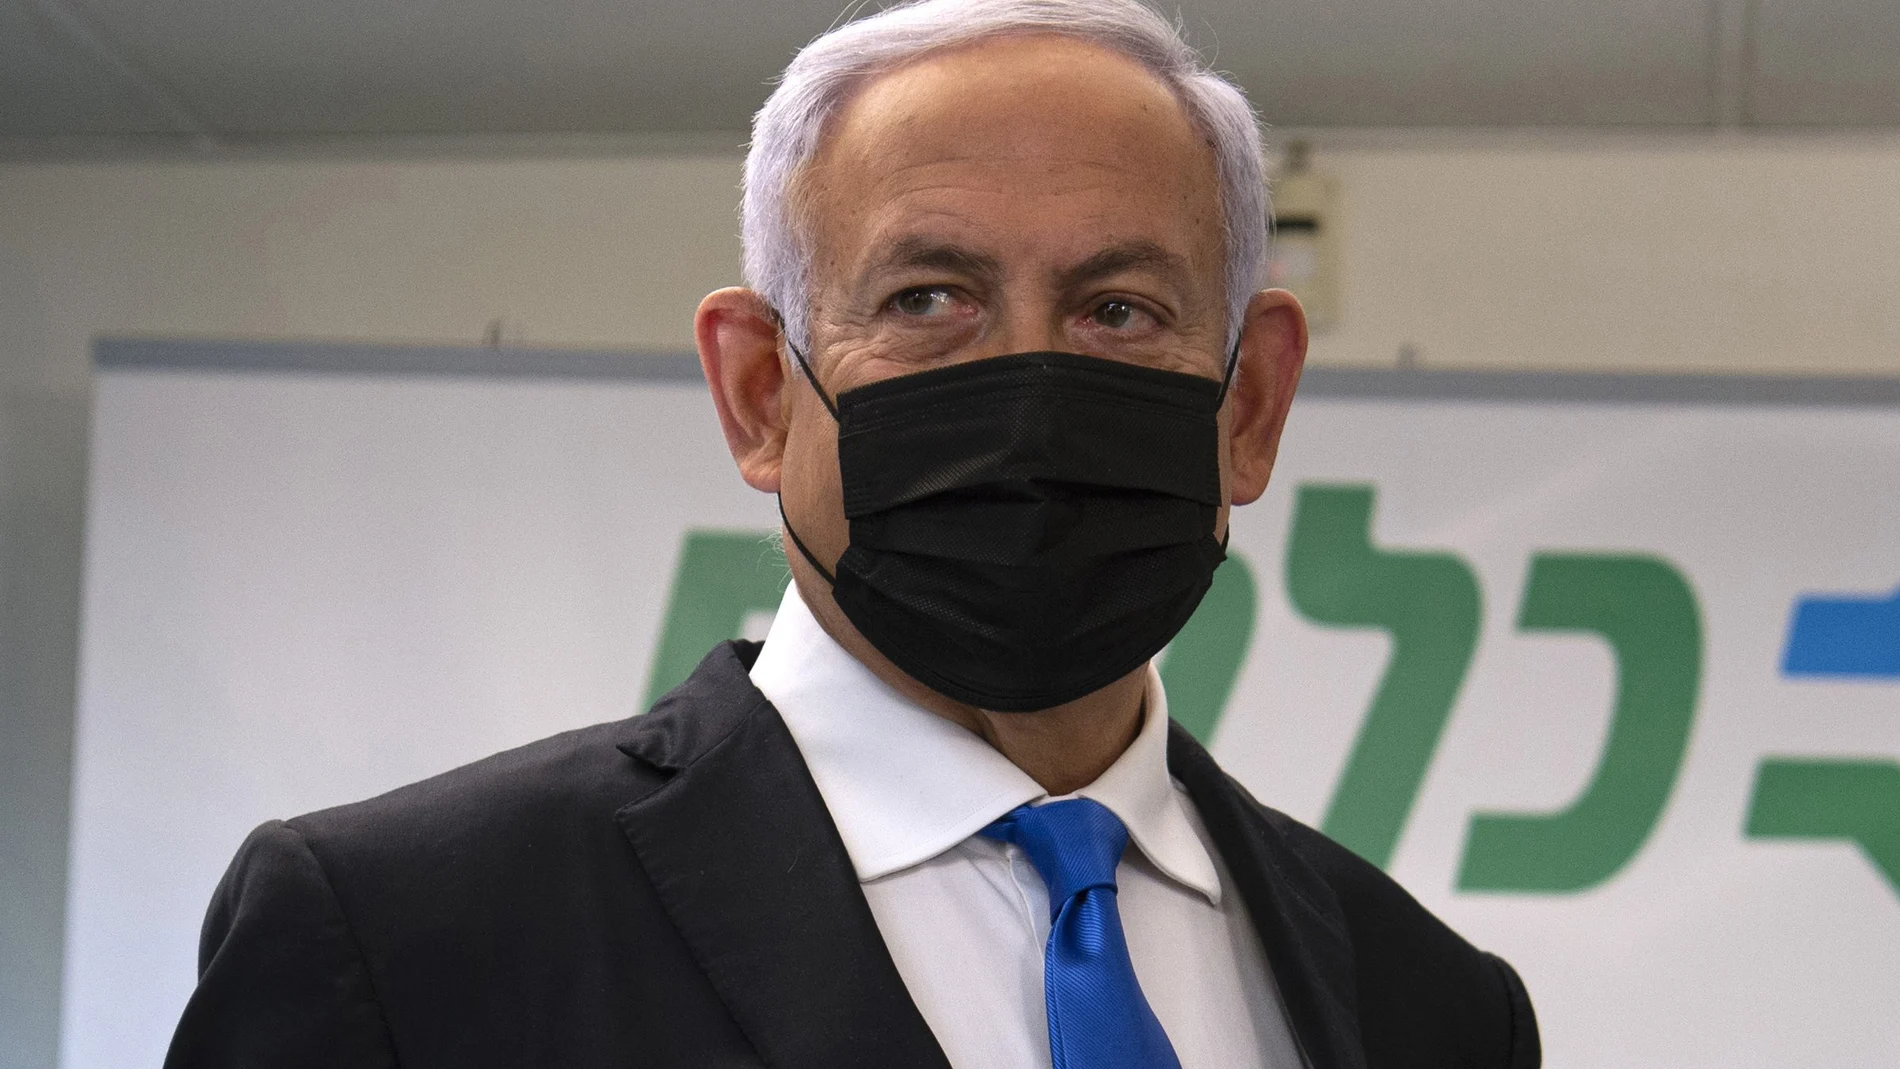 El primer ministro israelí, Benjamin Netanyahu, visita un centro de vacunación contra el coronavirus en la ciudad árabe de Nazaret